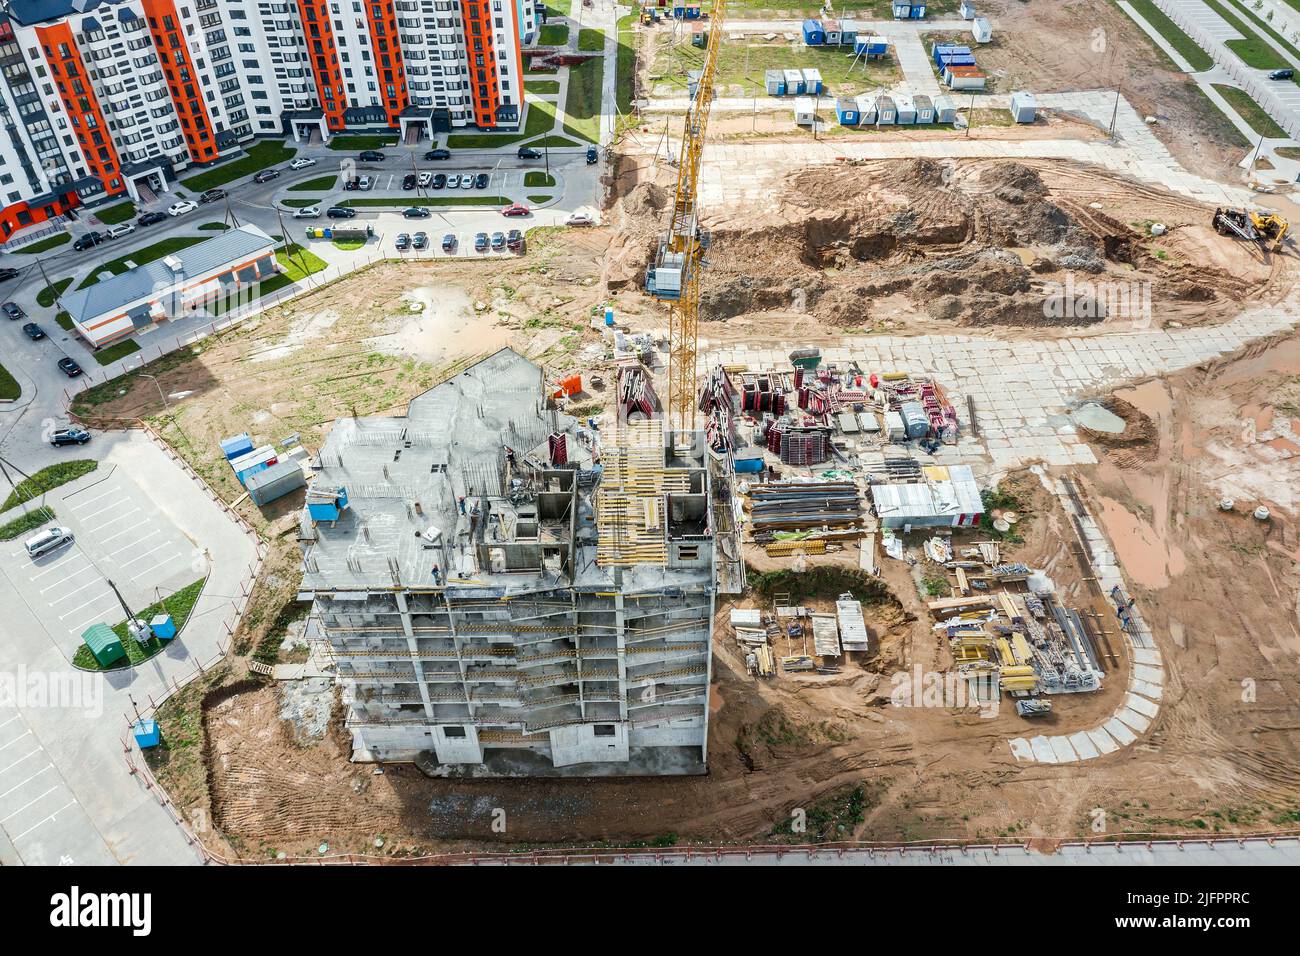 vista aerea del cantiere in zona residenziale con gru gialla e materiali da costruzione Foto Stock